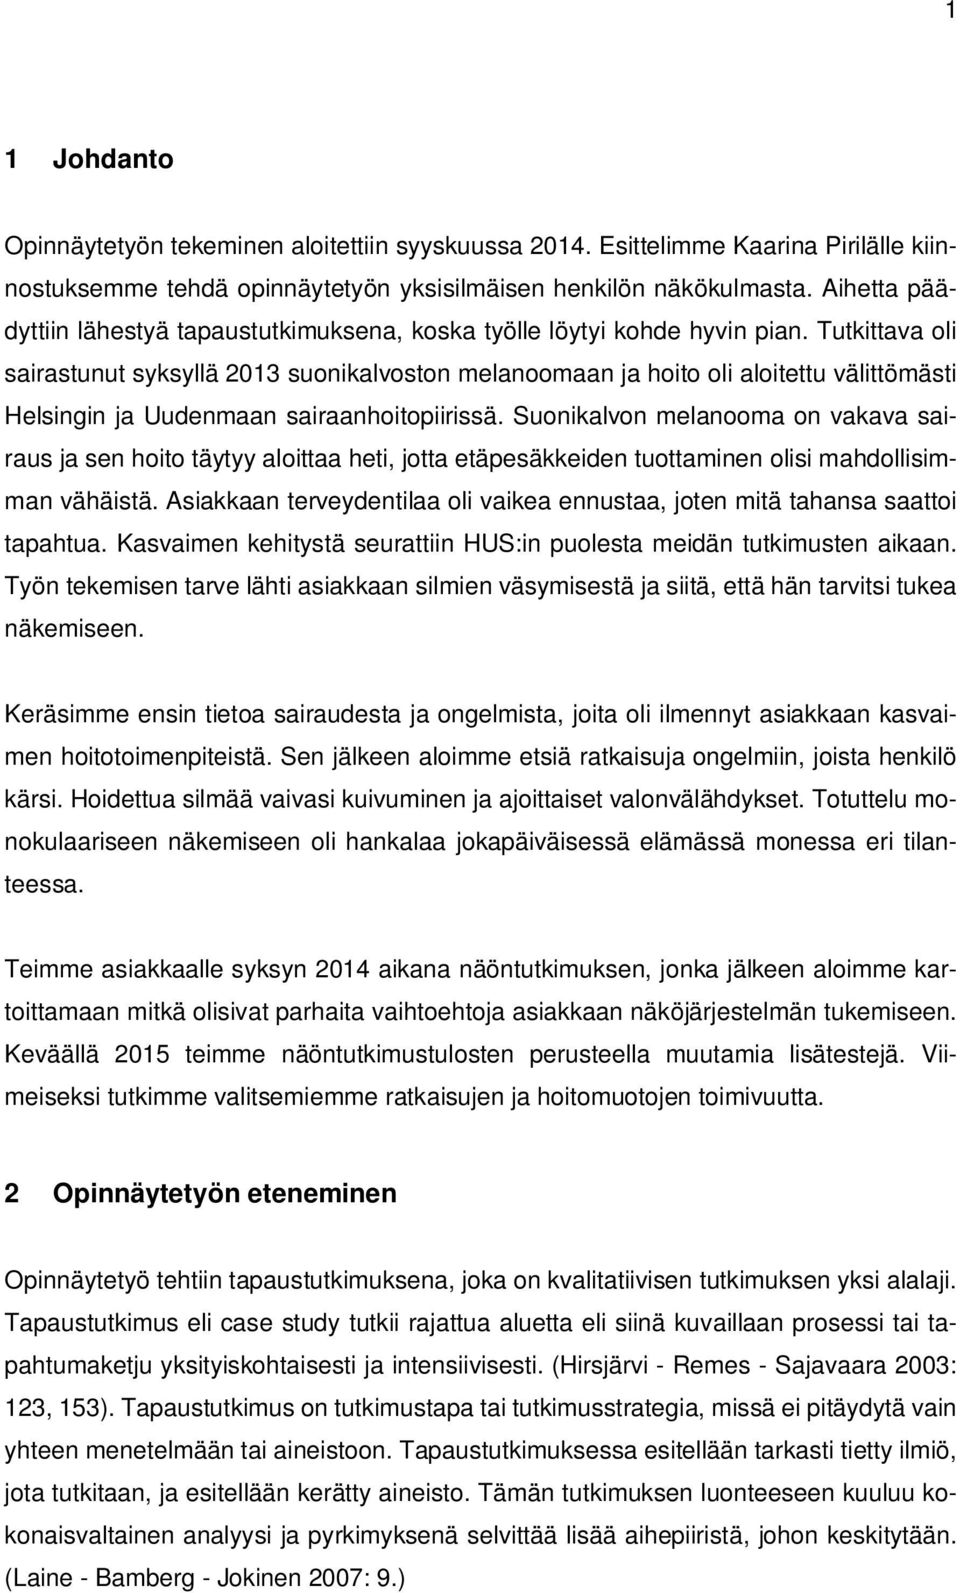 Tutkittava oli sairastunut syksyllä 2013 suonikalvoston melanoomaan ja hoito oli aloitettu välittömästi Helsingin ja Uudenmaan sairaanhoitopiirissä.